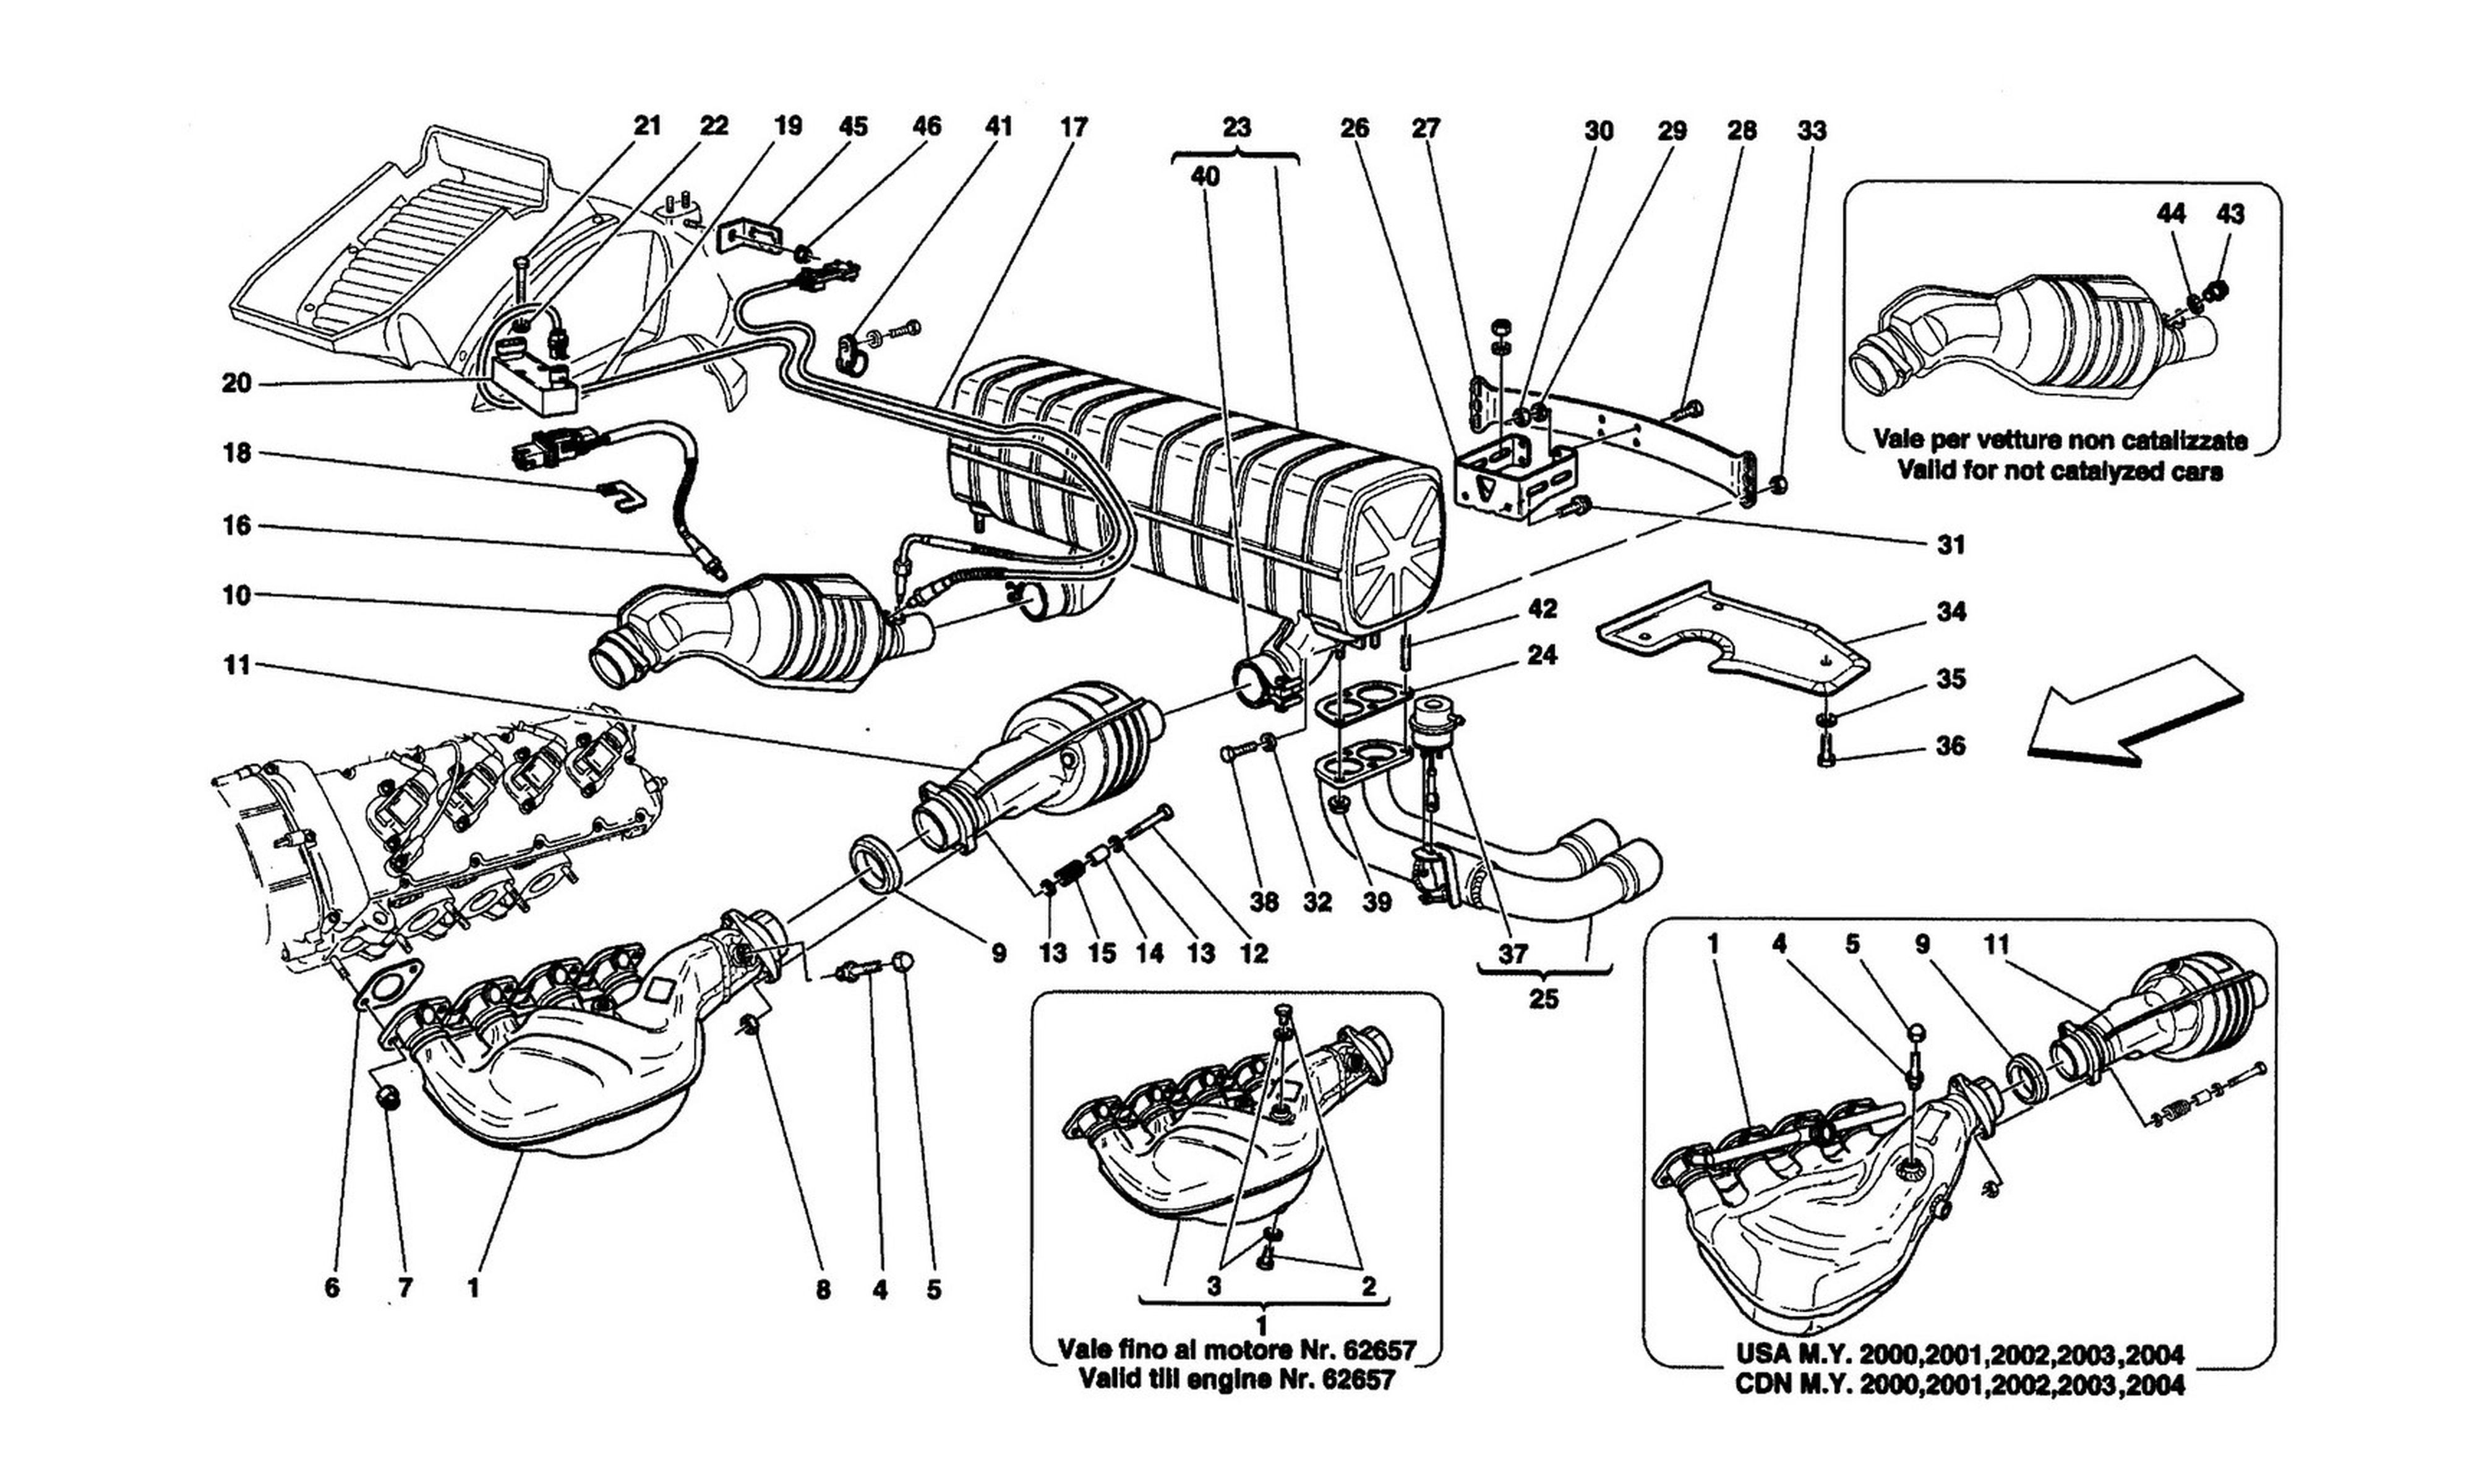 Schematic: Exhaust System